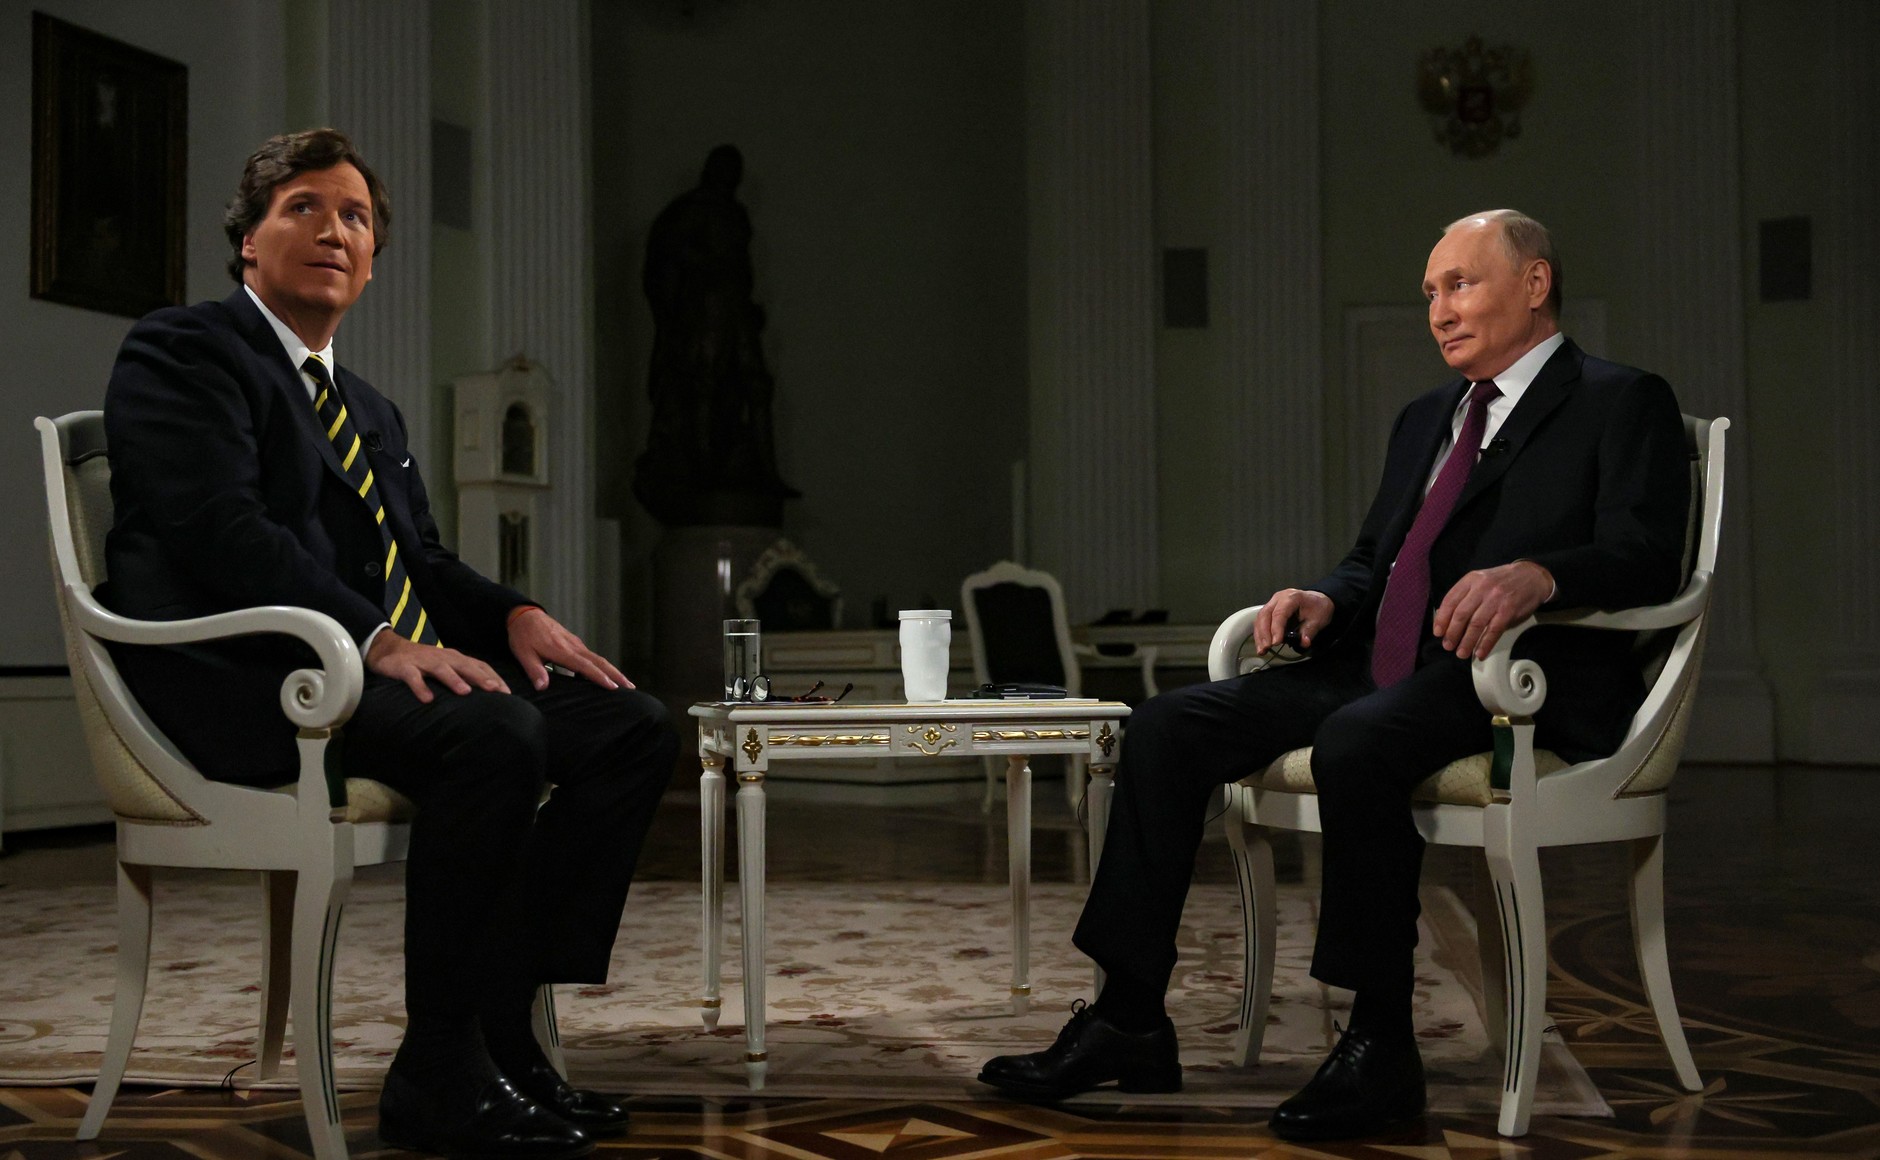 "Империя США в руинах": Интервью Путина подорвало веру американцев в демократию